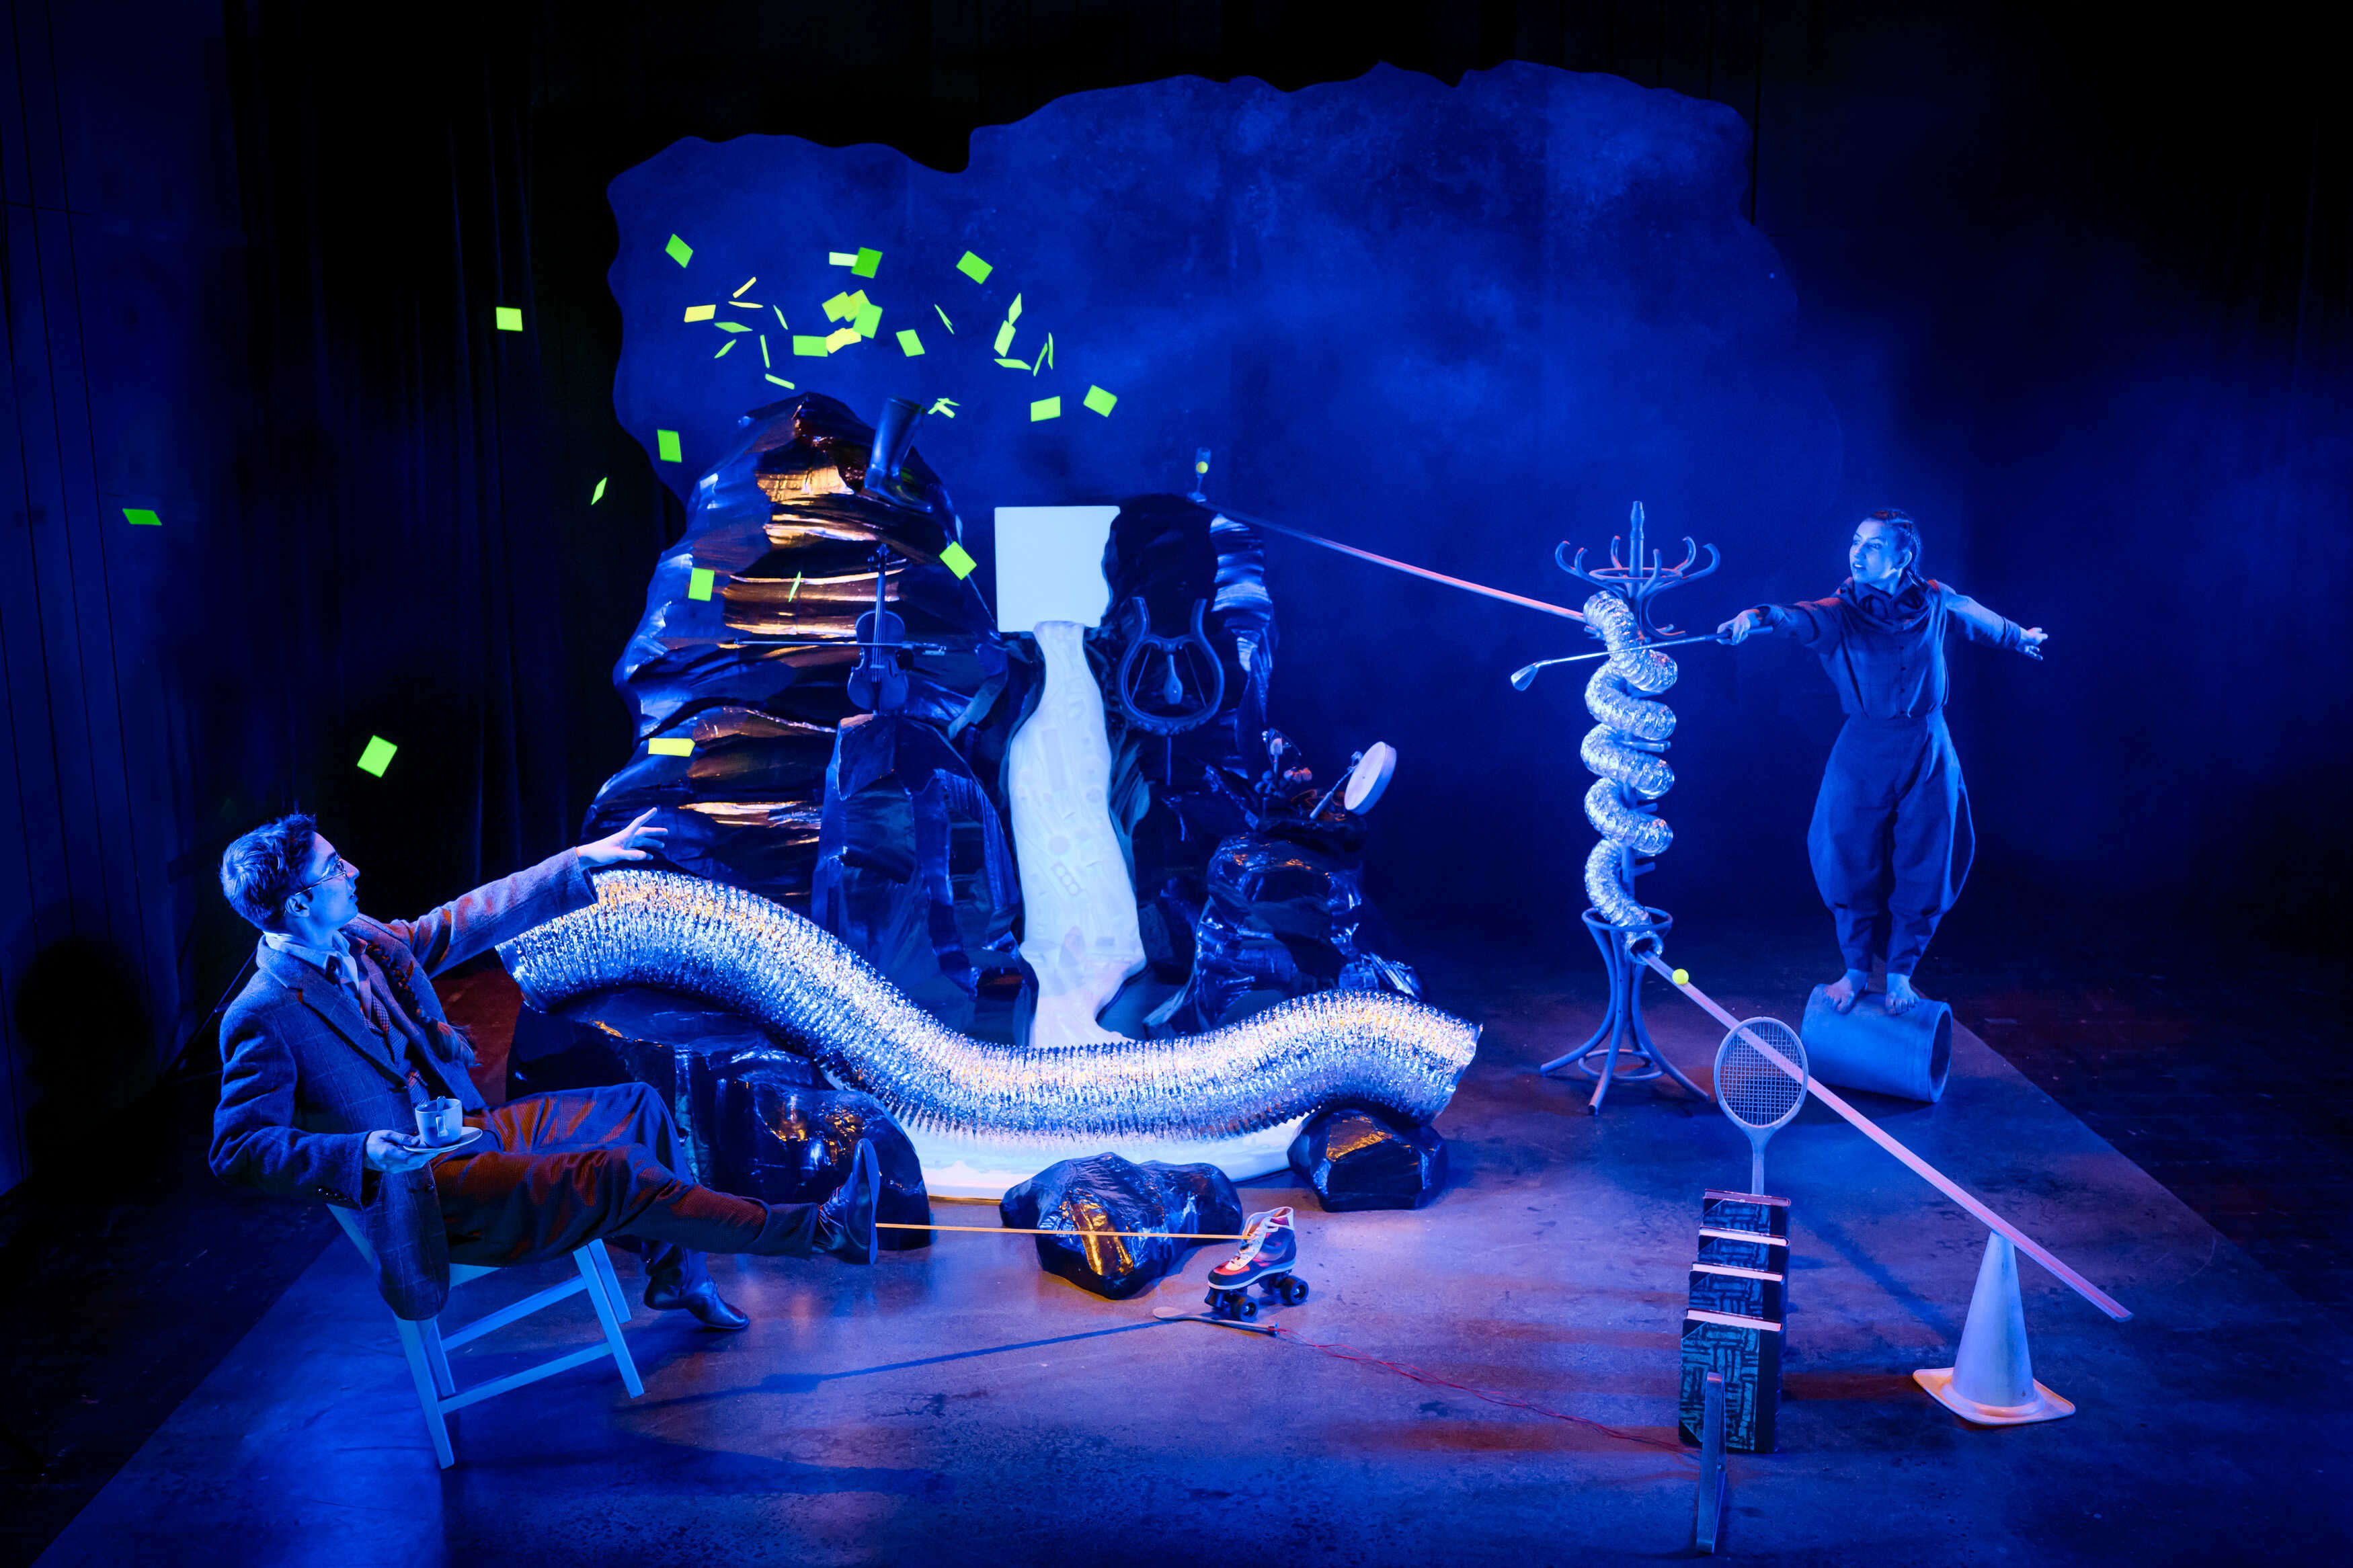 Föreställningsbild från föreställningen Goldbergvariationerna. Ett vattenfall rinner genom dimma och blått ljus. Två cirkusartister är på vardera sida och pekar mot varandra med föremål i händerna